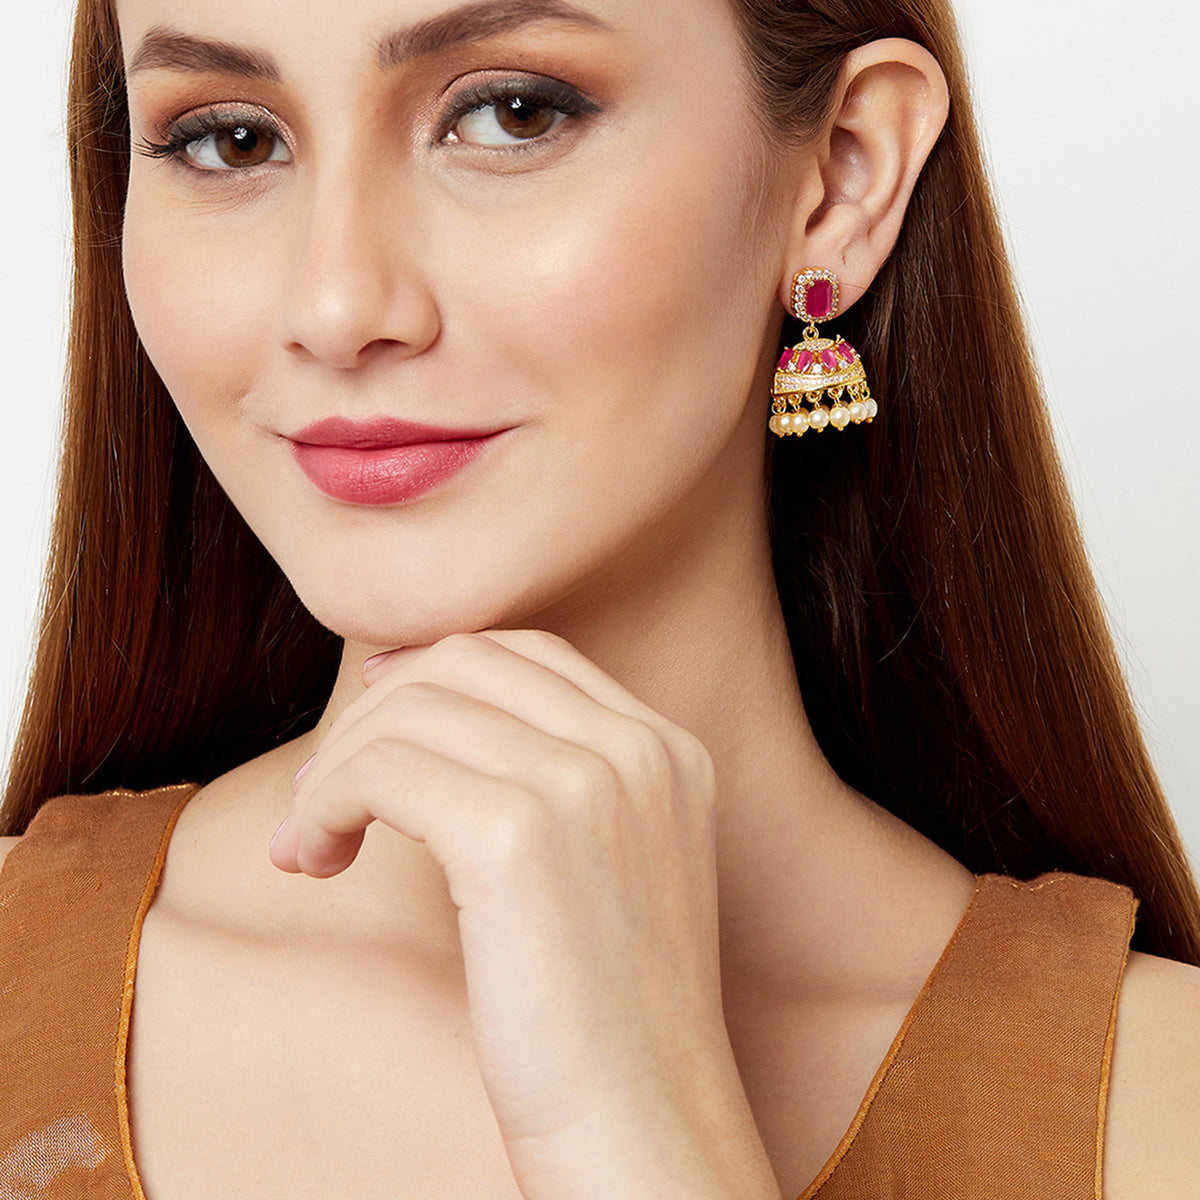 Ethnic Style Jhumka Drop Earrings